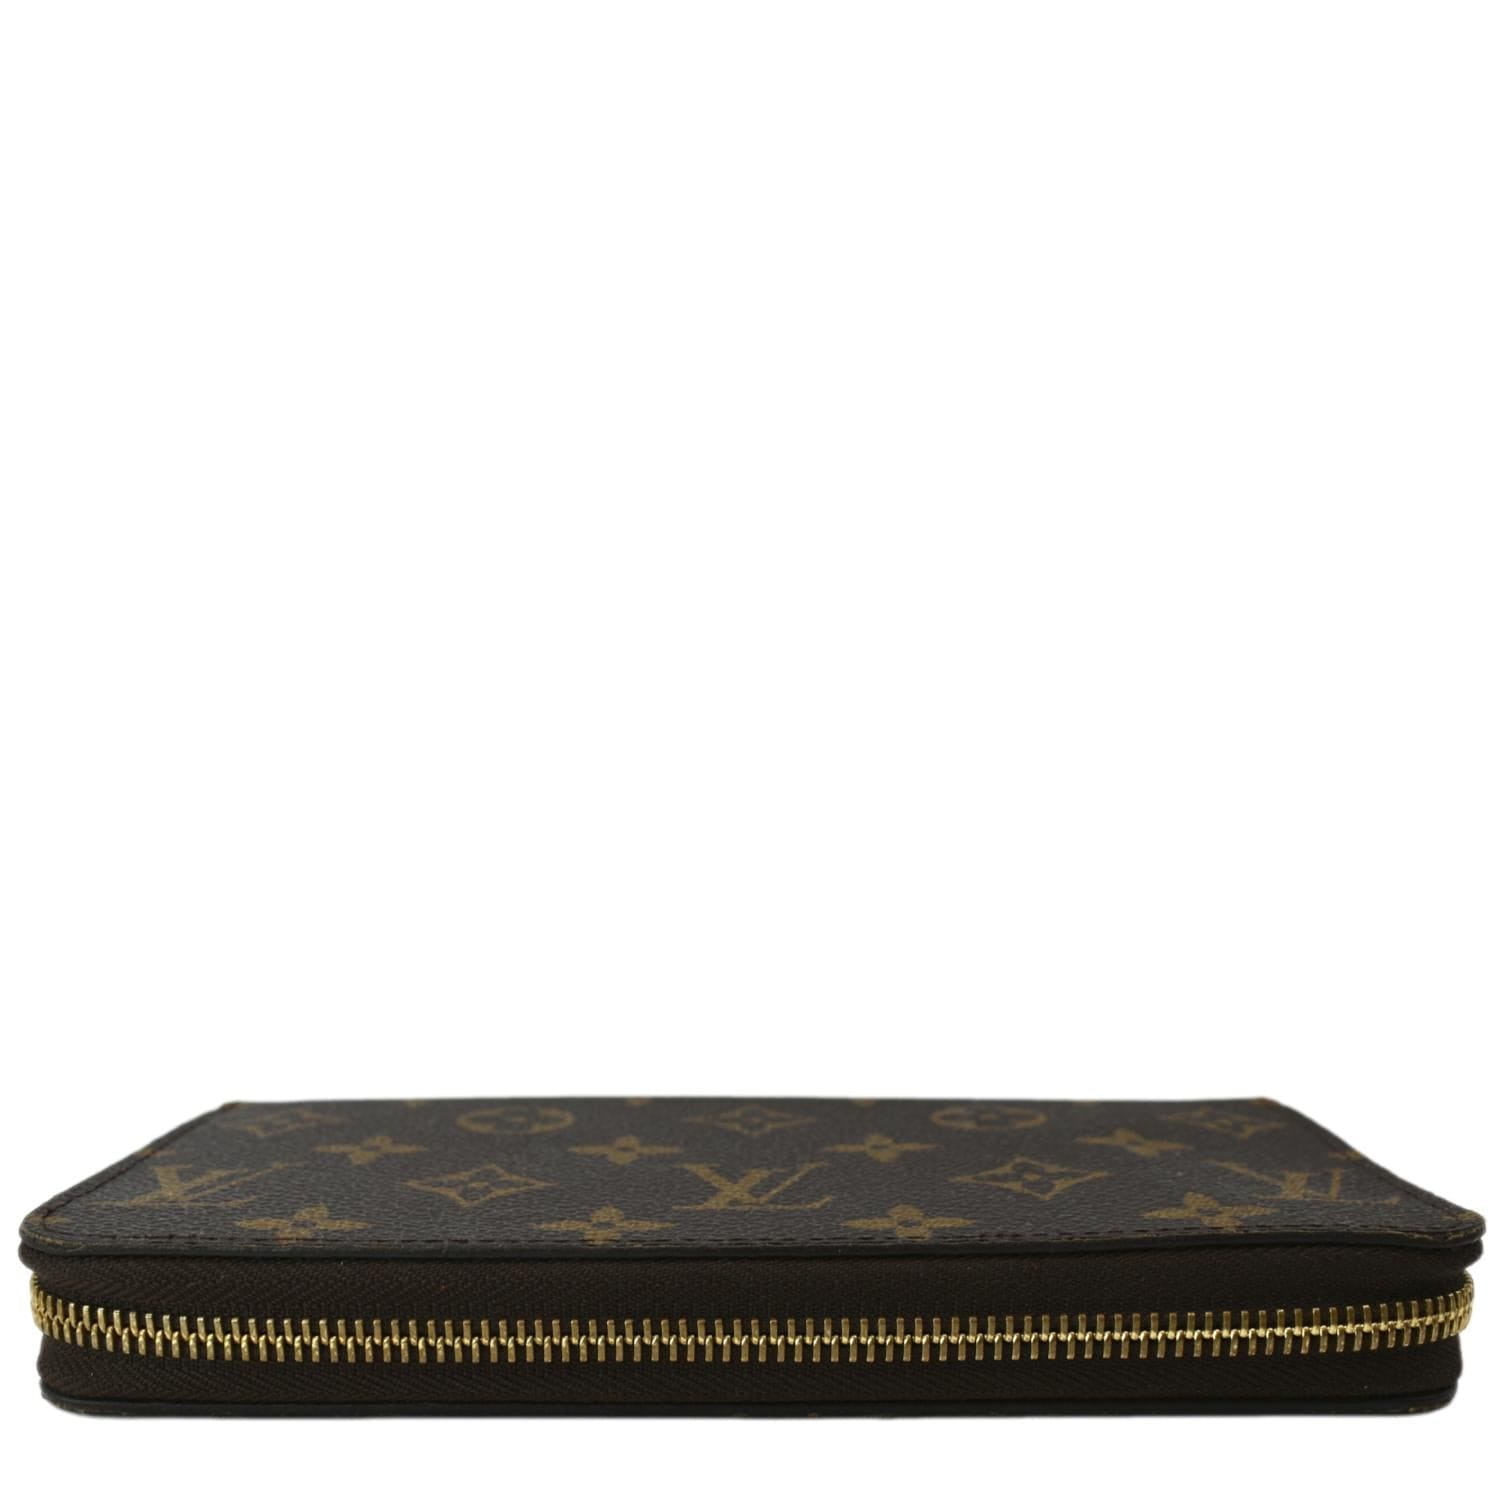 vexx.eth on X: gm 💫 Who wants this custom Louis Vuitton x Vexx wallet?   / X